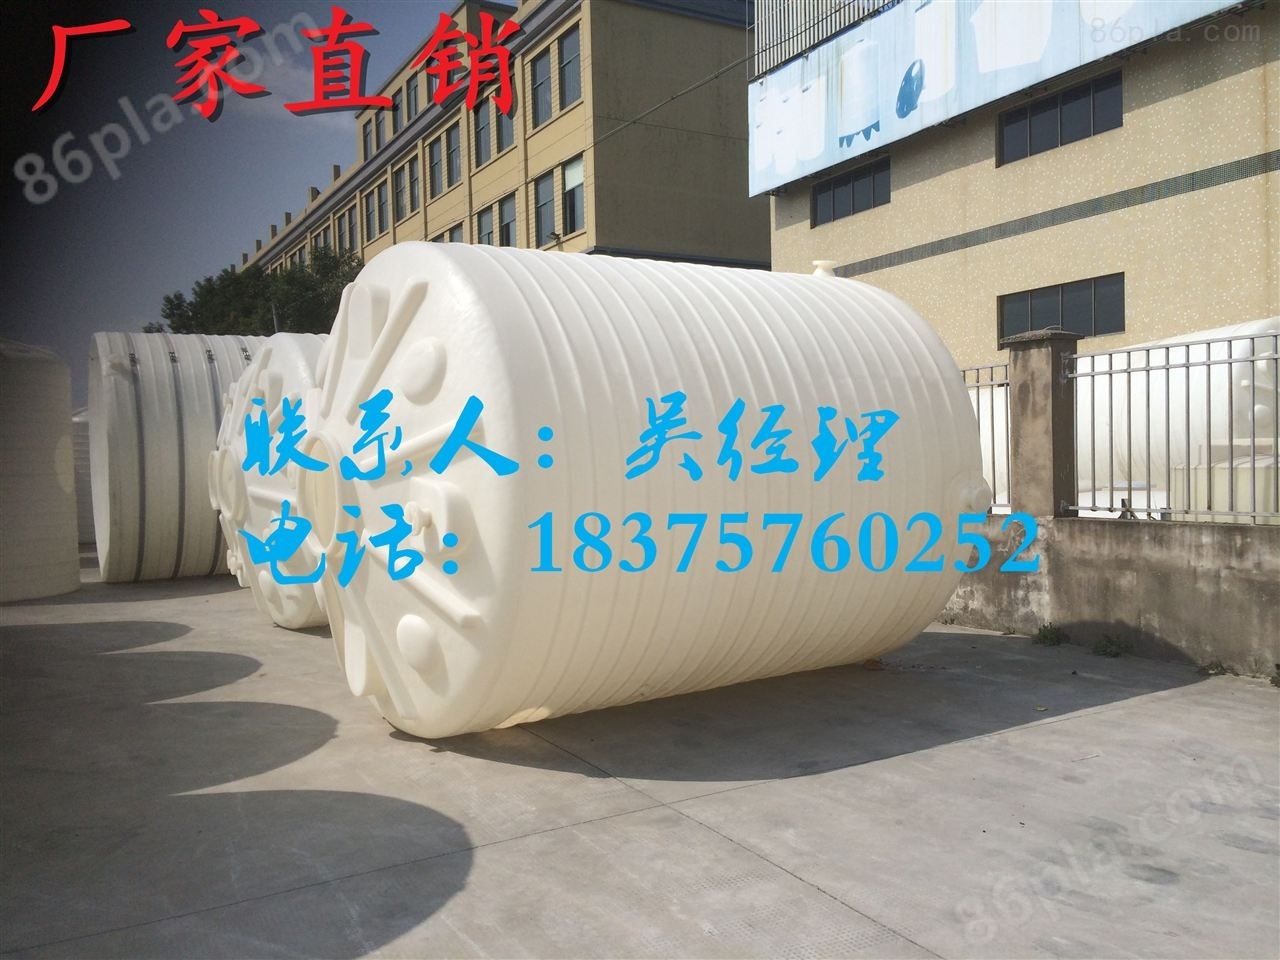 供应重庆南川PT-8000LPE水箱防腐储罐*